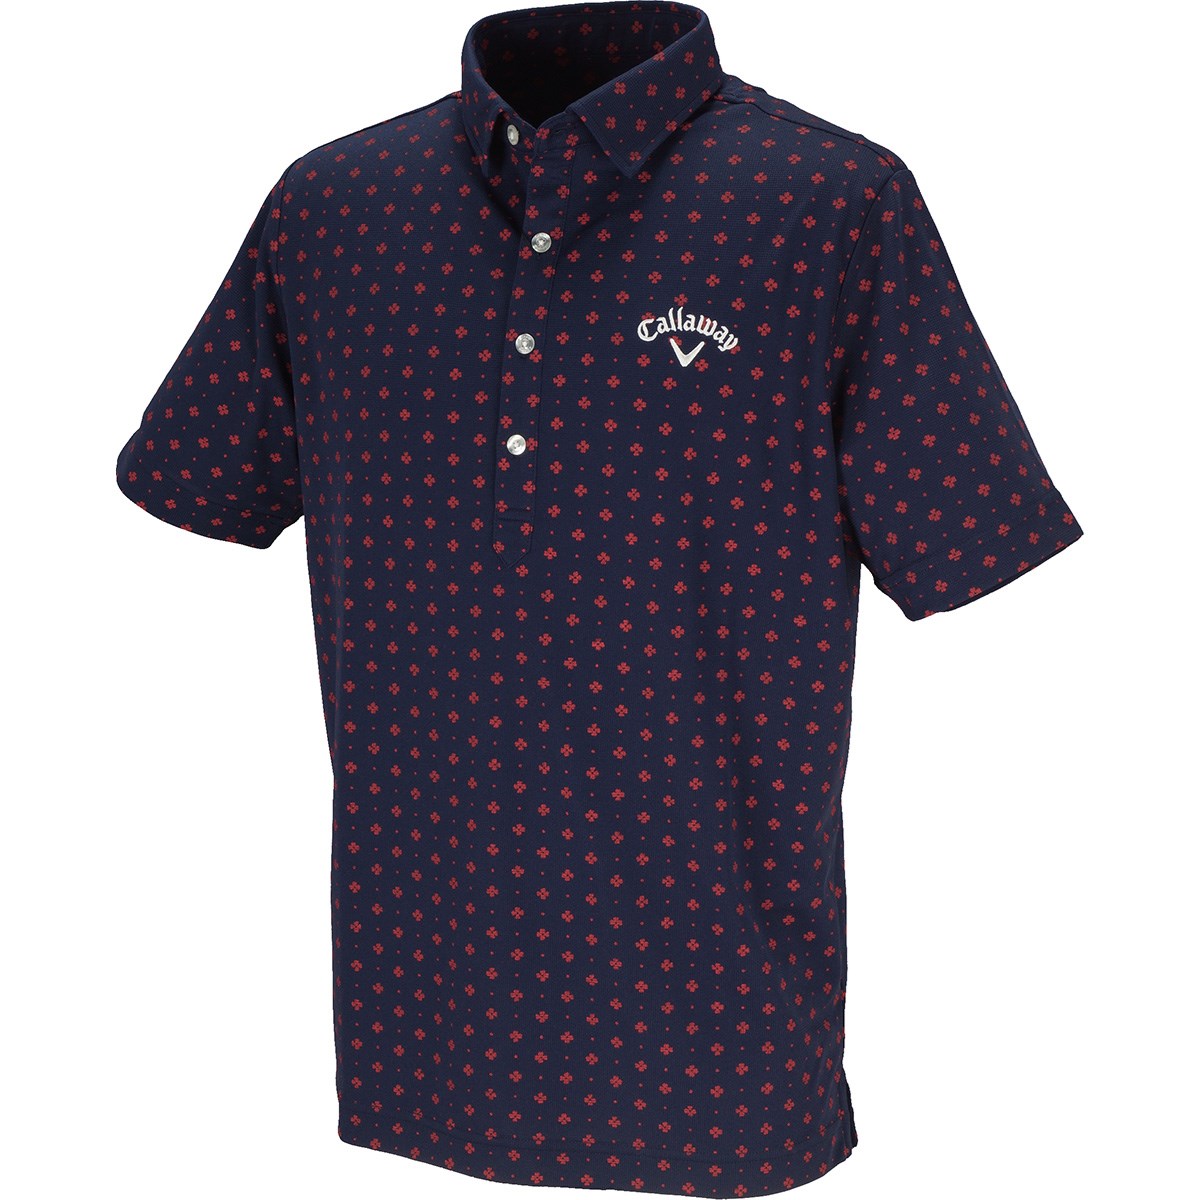 キャロウェイゴルフ(Callaway Golf) ドットプリントミニワッフル共襟半袖ポロシャツ 